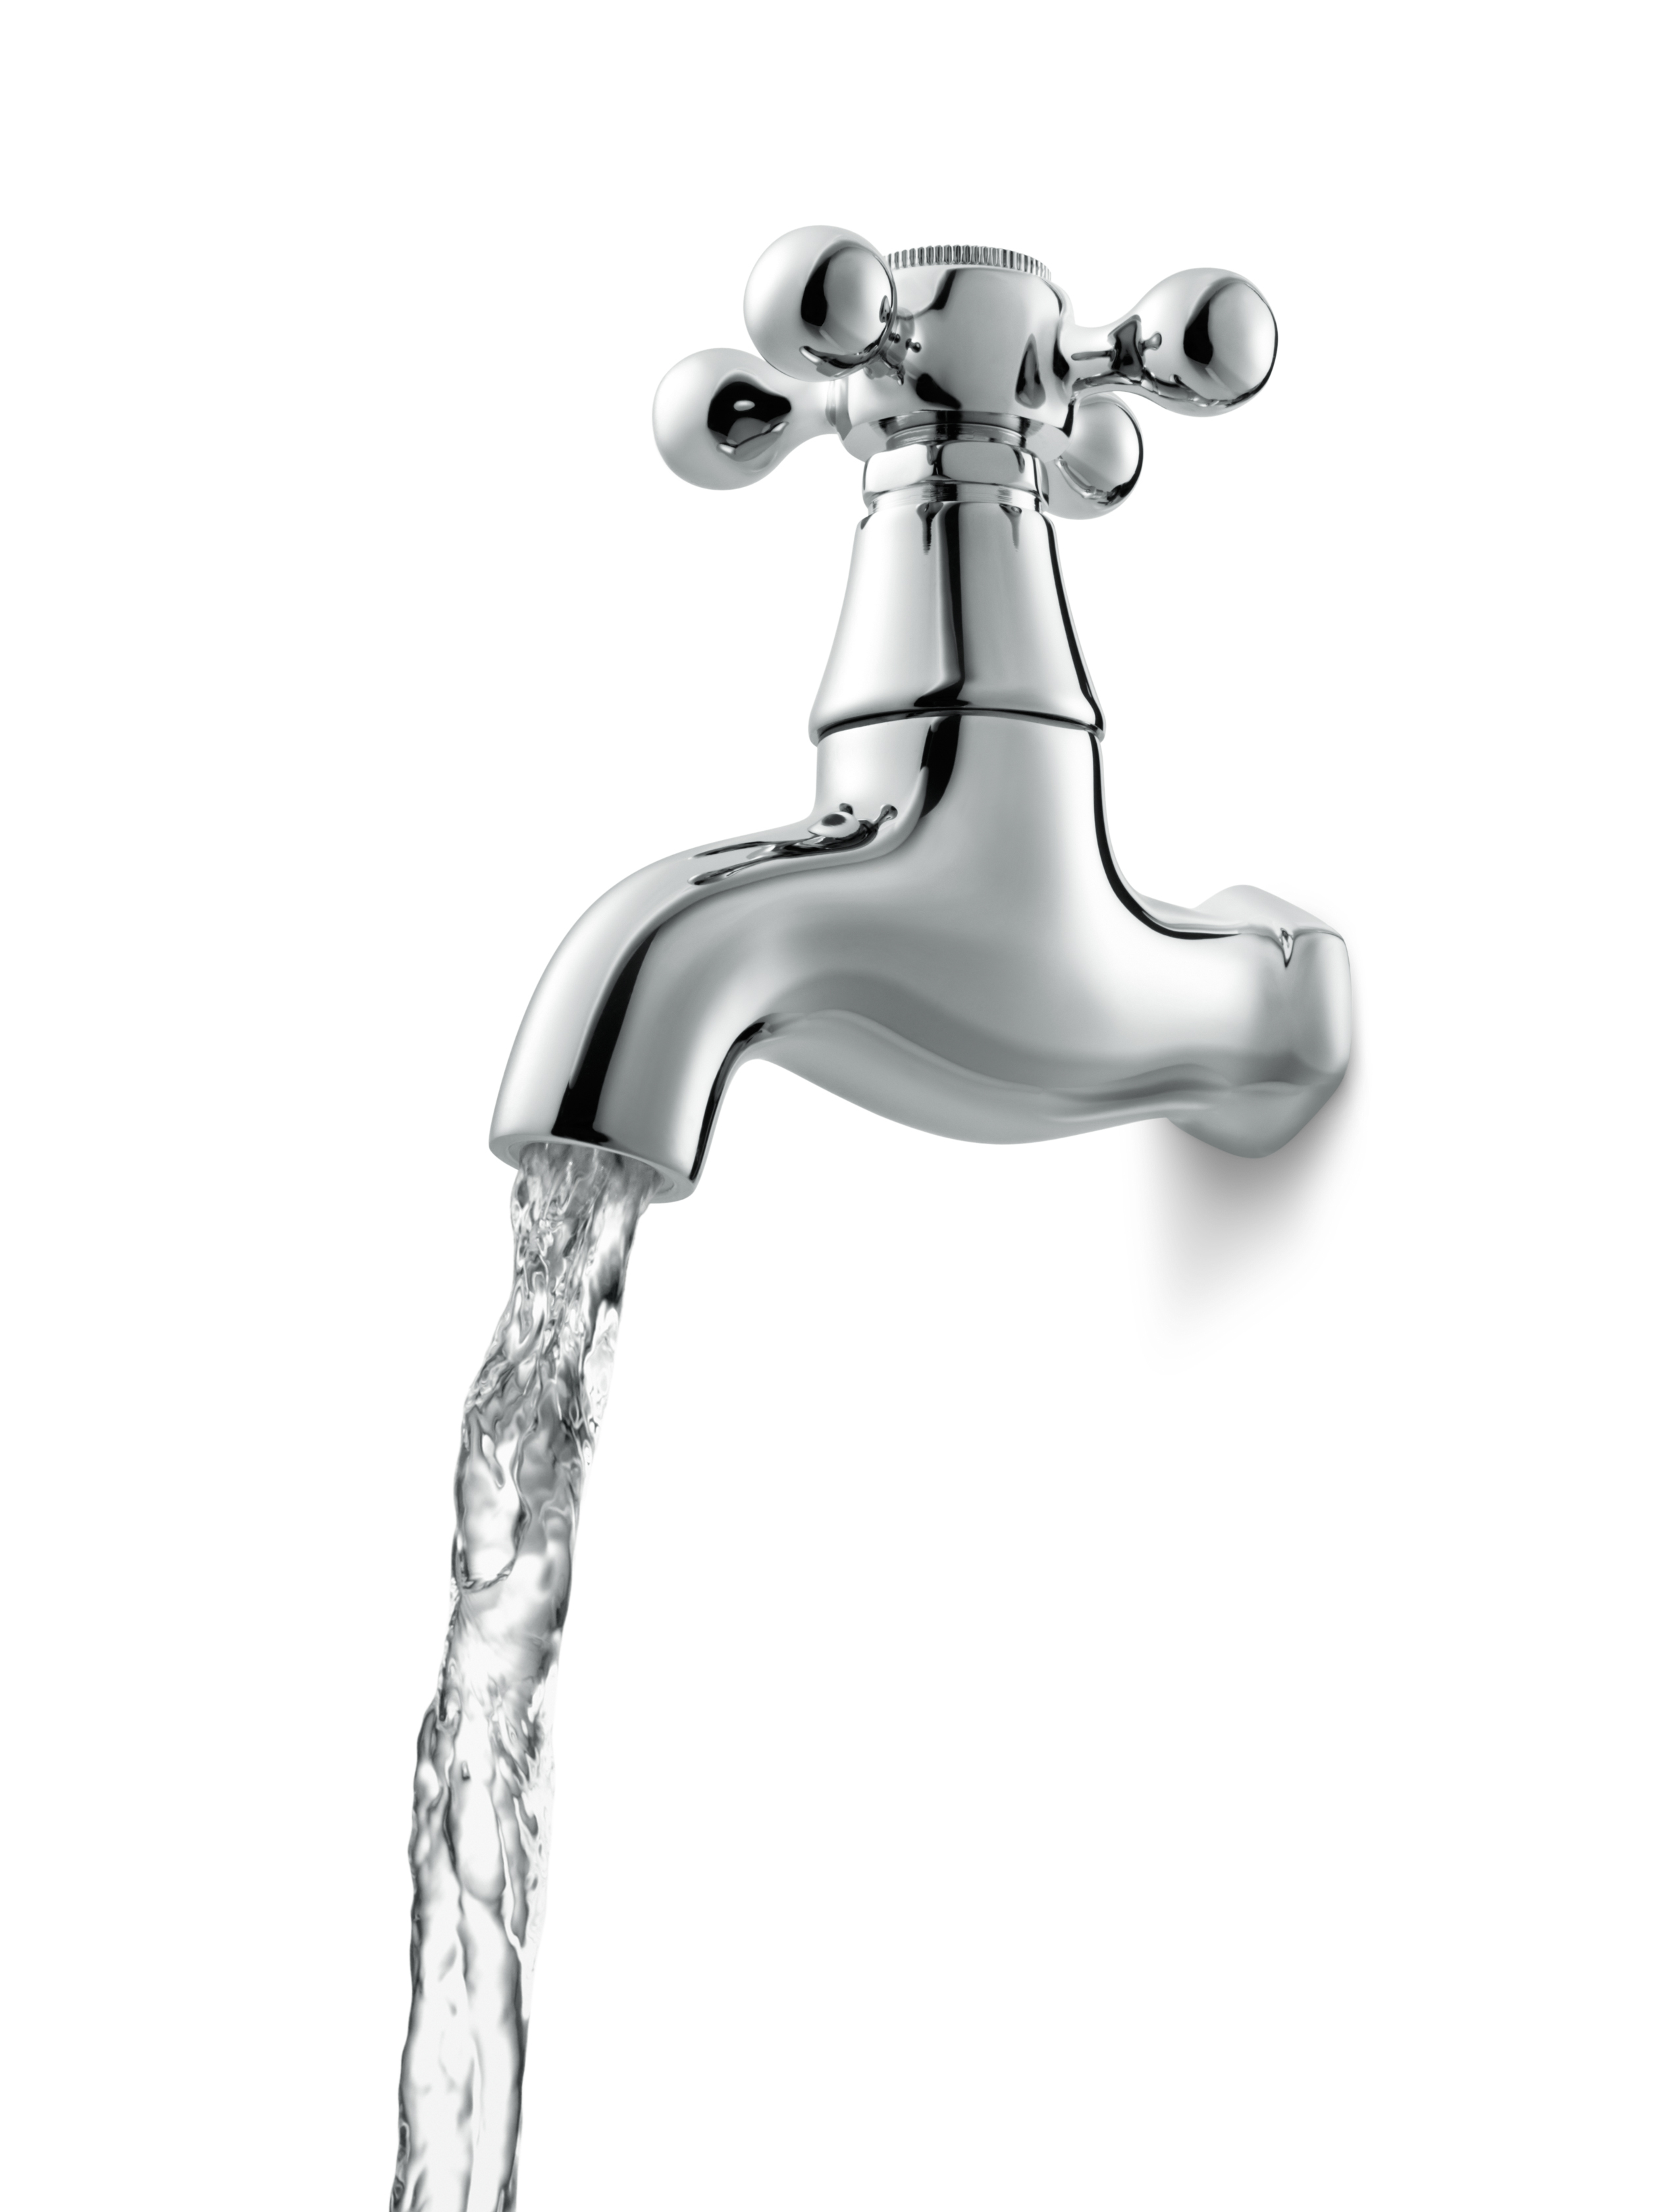 tap water png, Faucet, Runnin